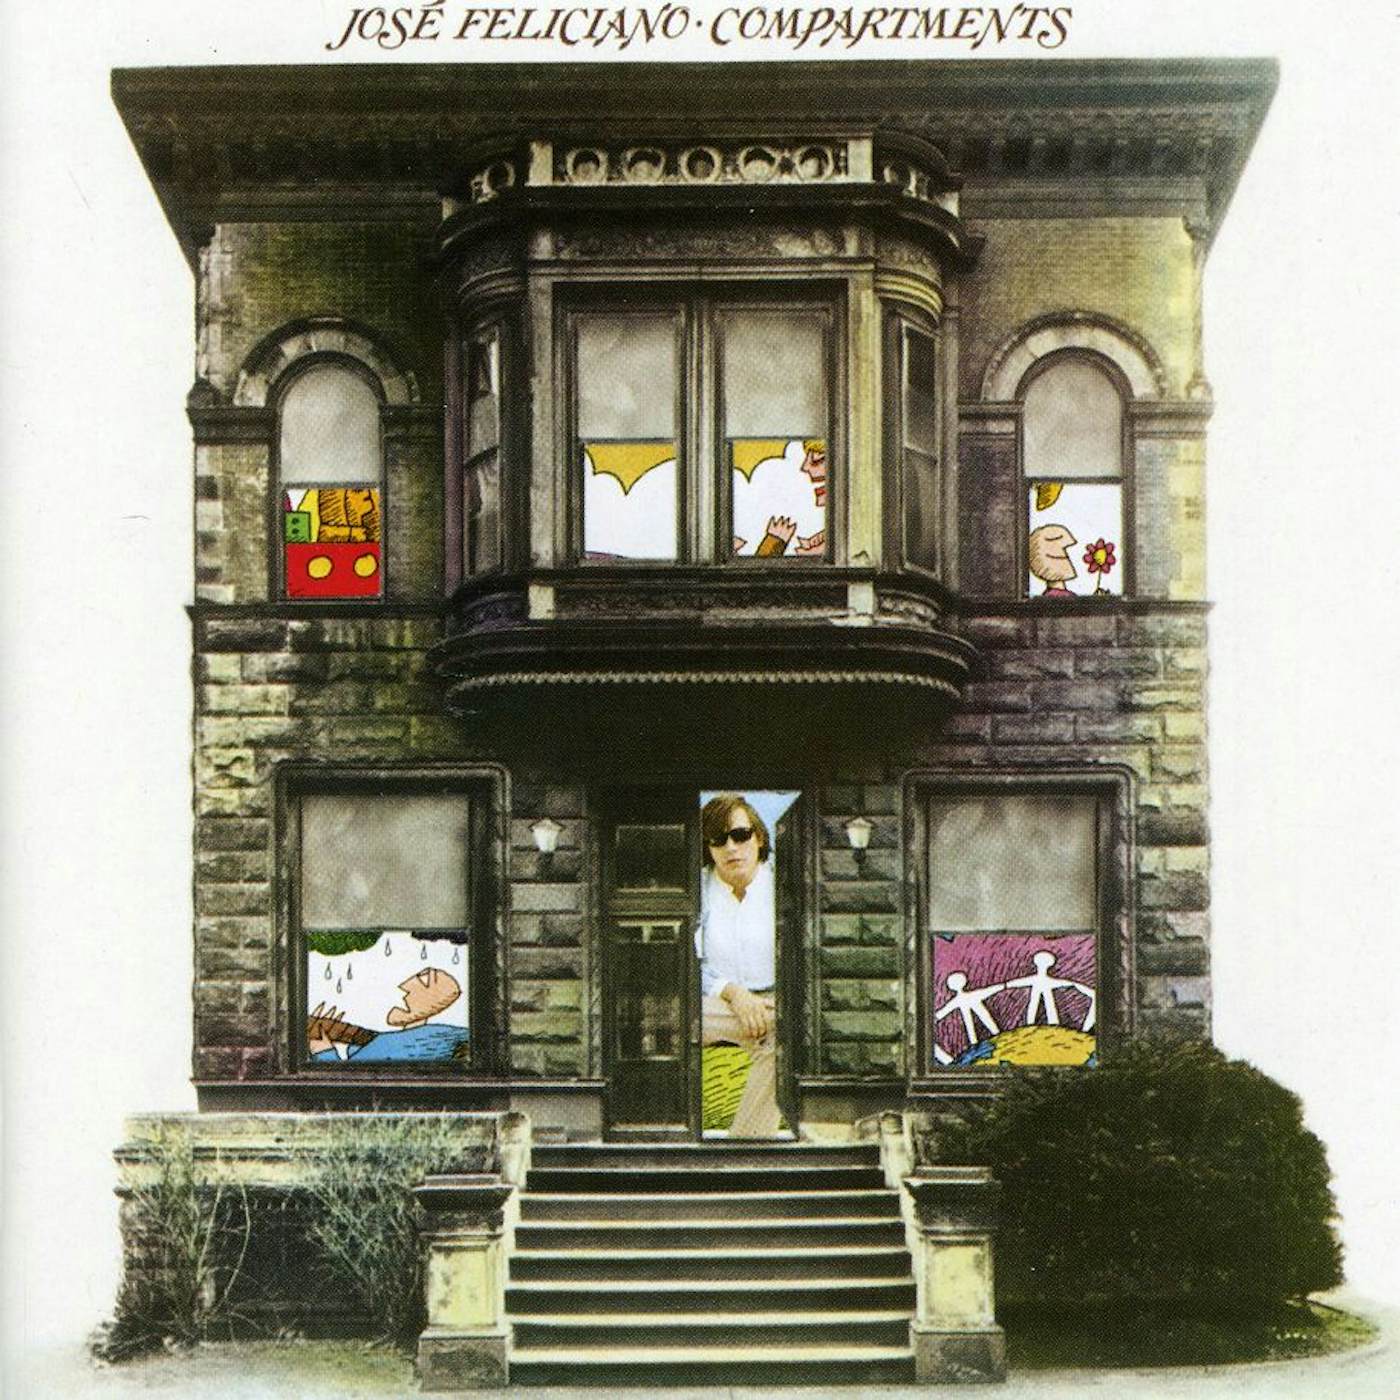 José Feliciano COMPARTMENTS CD